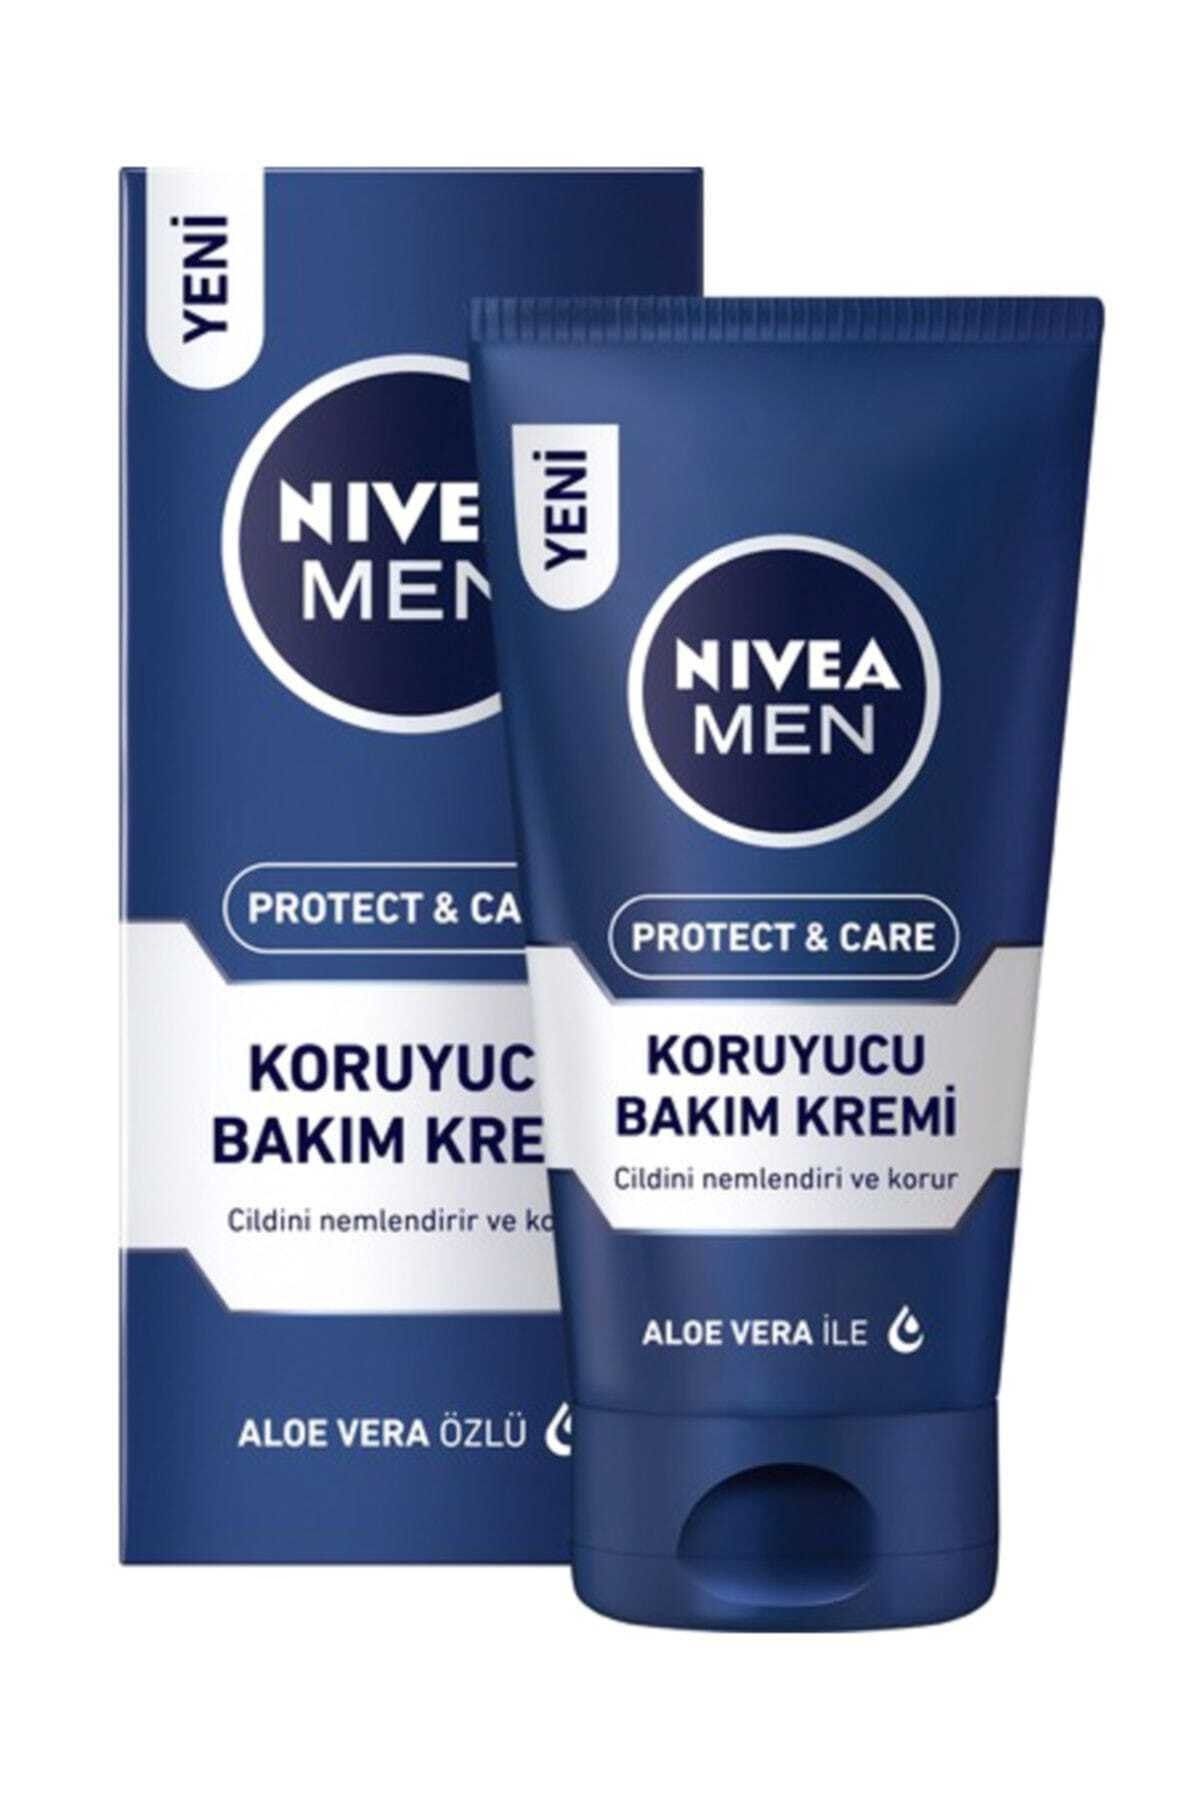 NIVEA Men Protect & Care Koruyucu Bakım Kremi 75ml